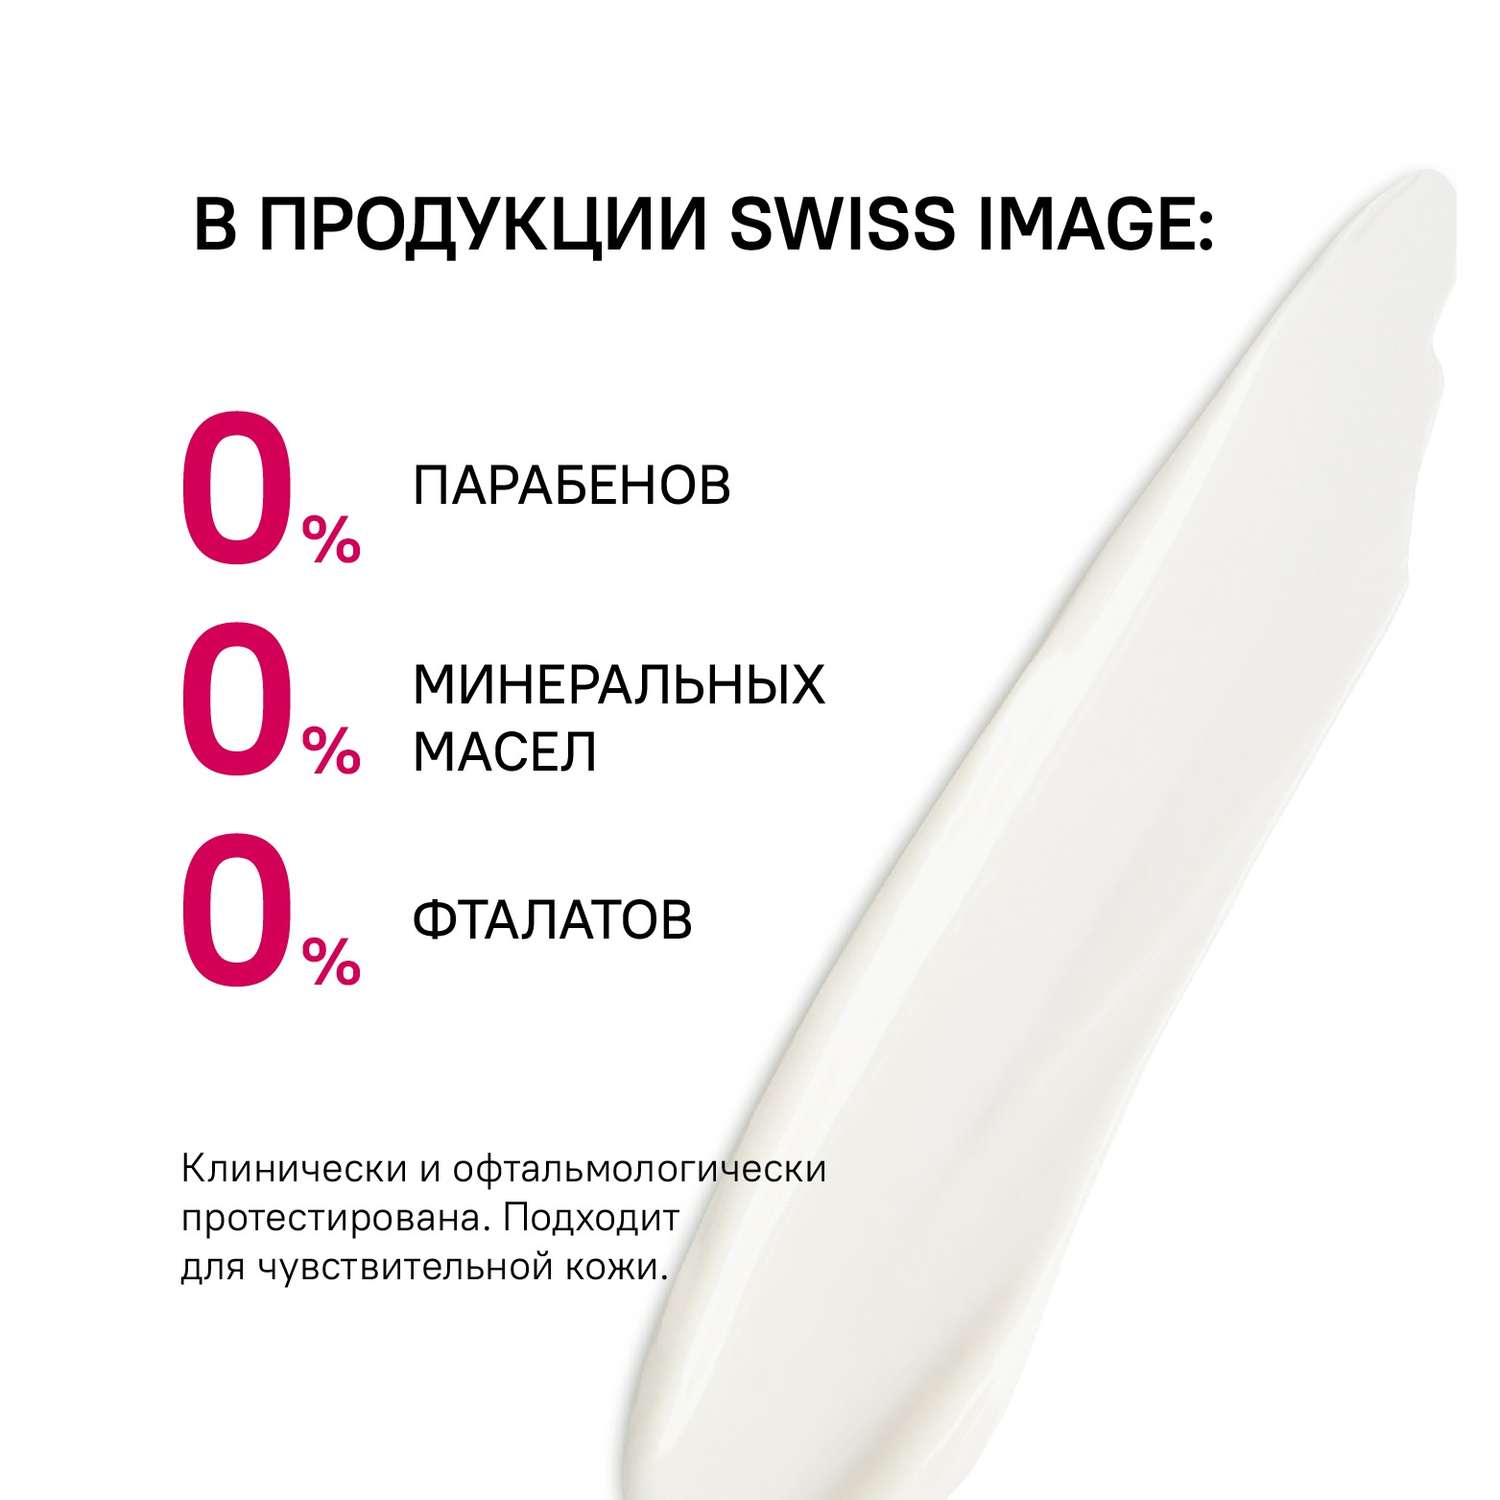 Ночной крем Swiss image для лица против первых признаков старения 26+ 50 мл - фото 9